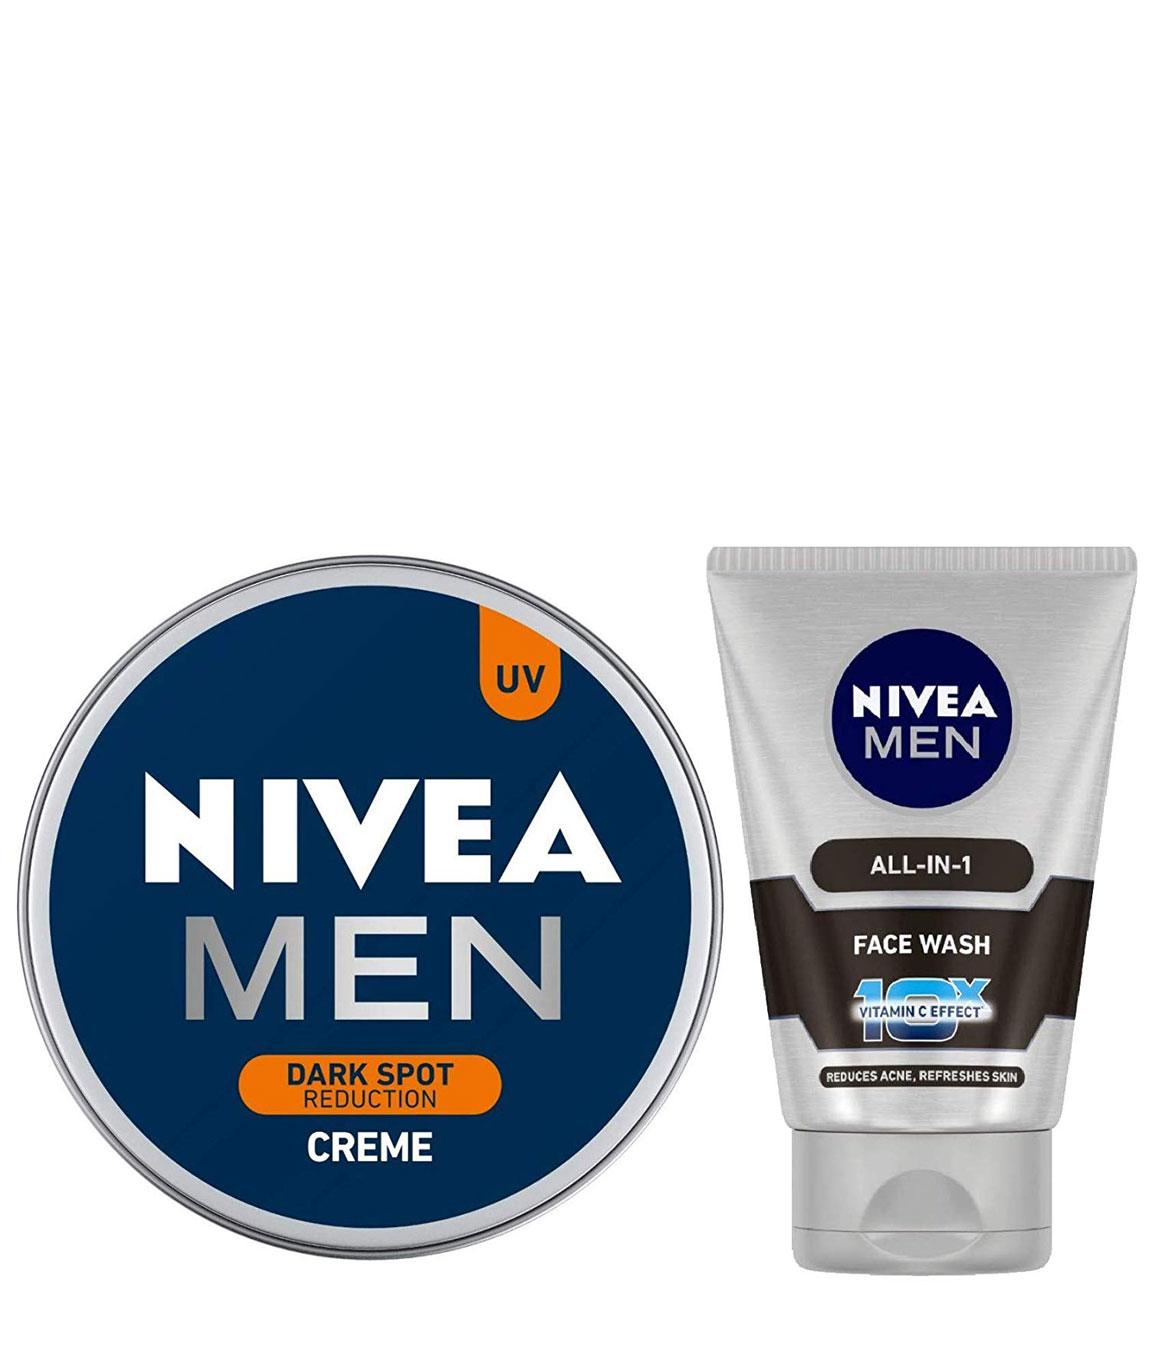 NIVEA MEN Cream, Dark Spot Reduction, 150ml and NIVEA MEN Face Wash, All-in-One, 100ml